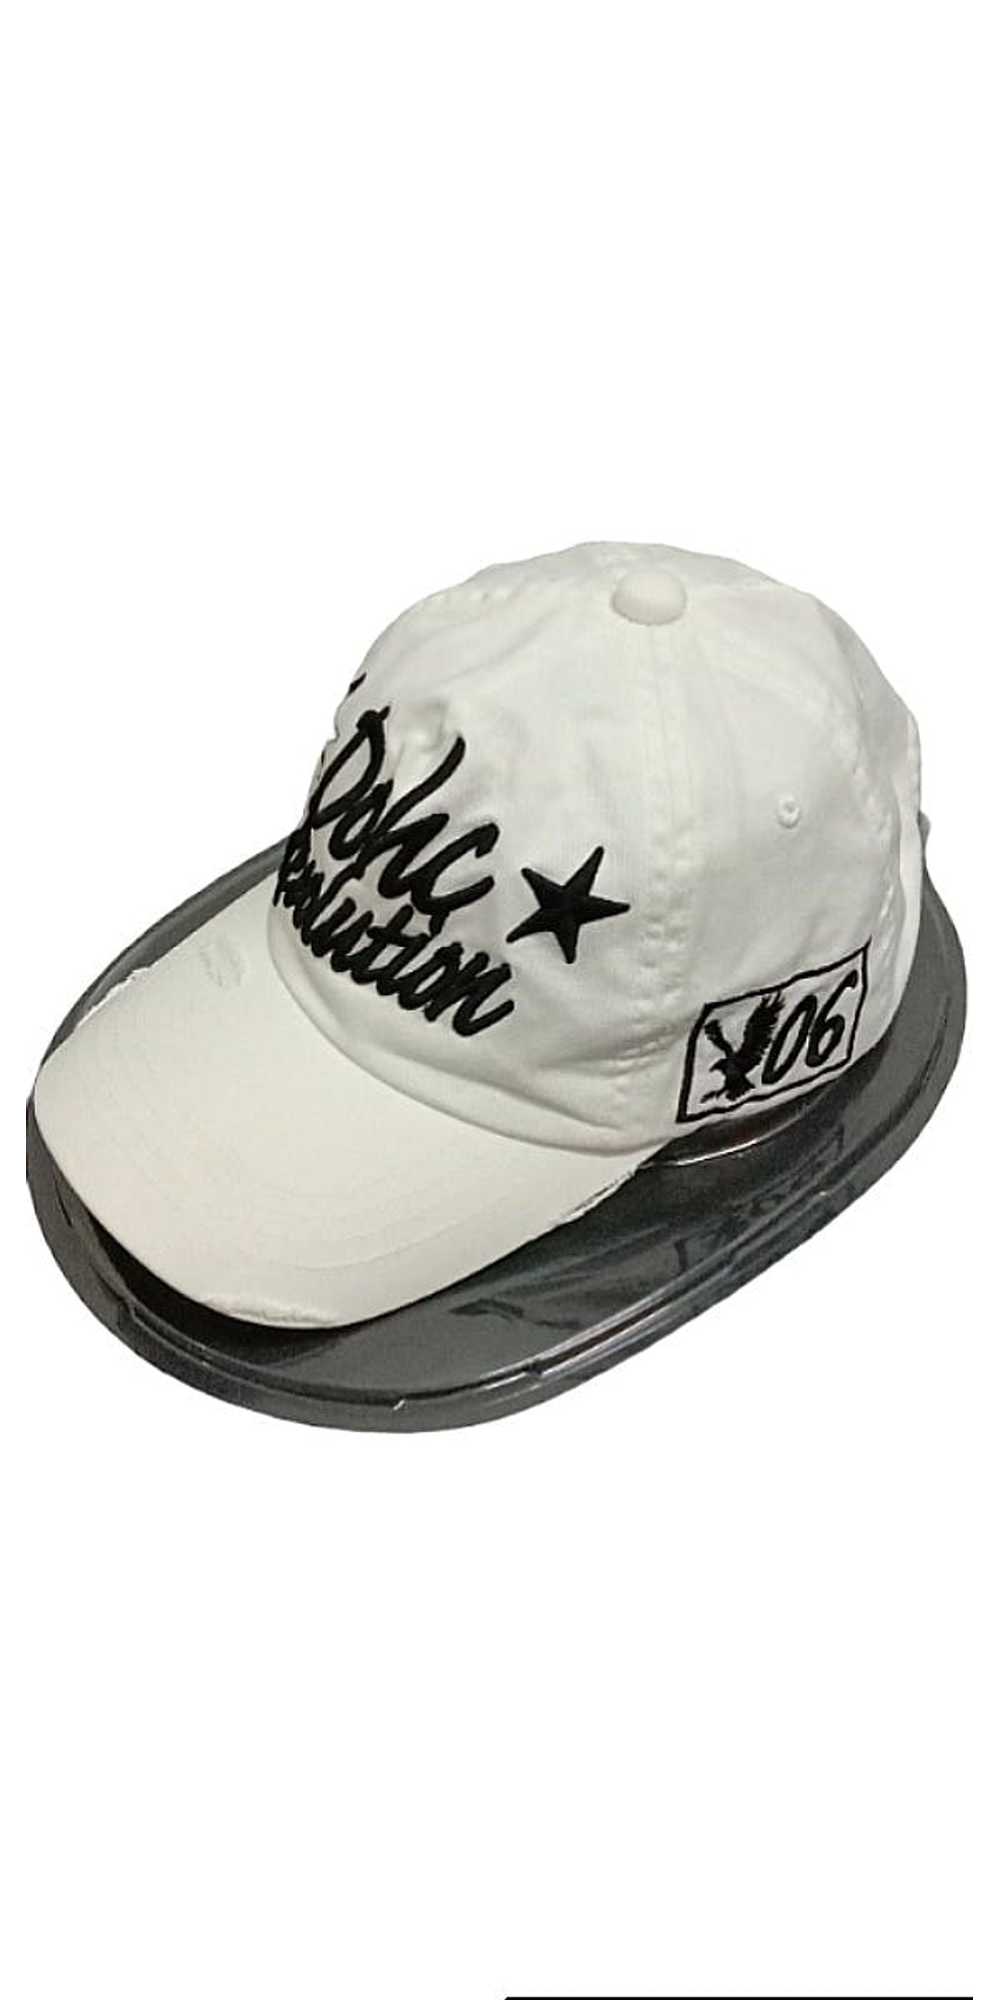 Japanese Brand Original Dohc Revolution cap - image 1